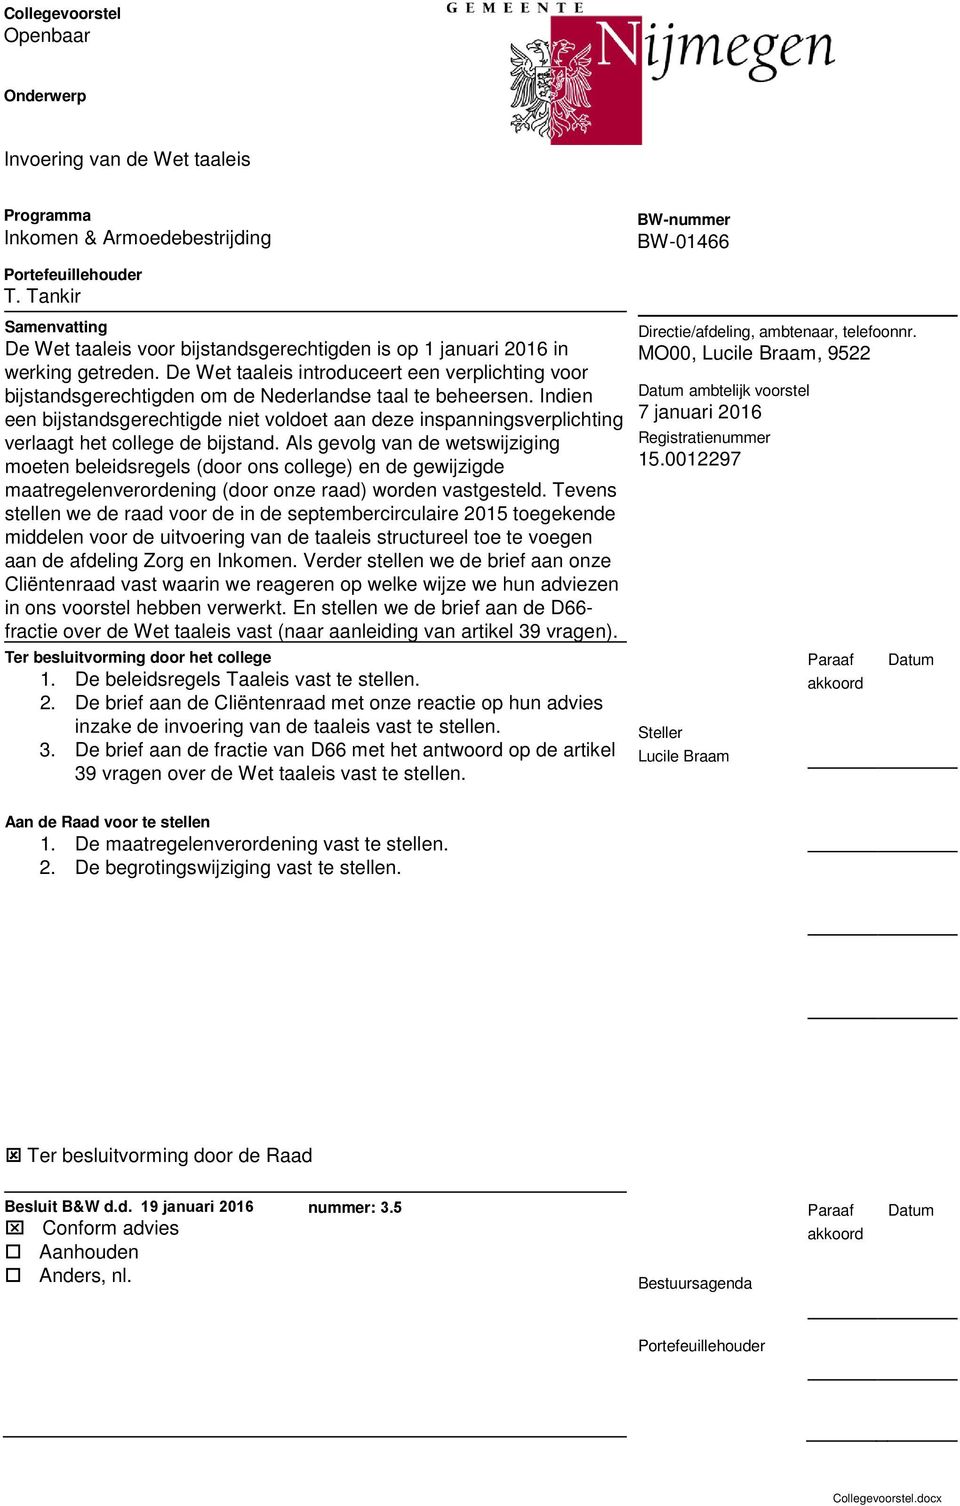 De Wet taaleis introduceert een verplichting voor bijstandsgerechtigden om de Nederlandse taal te beheersen.